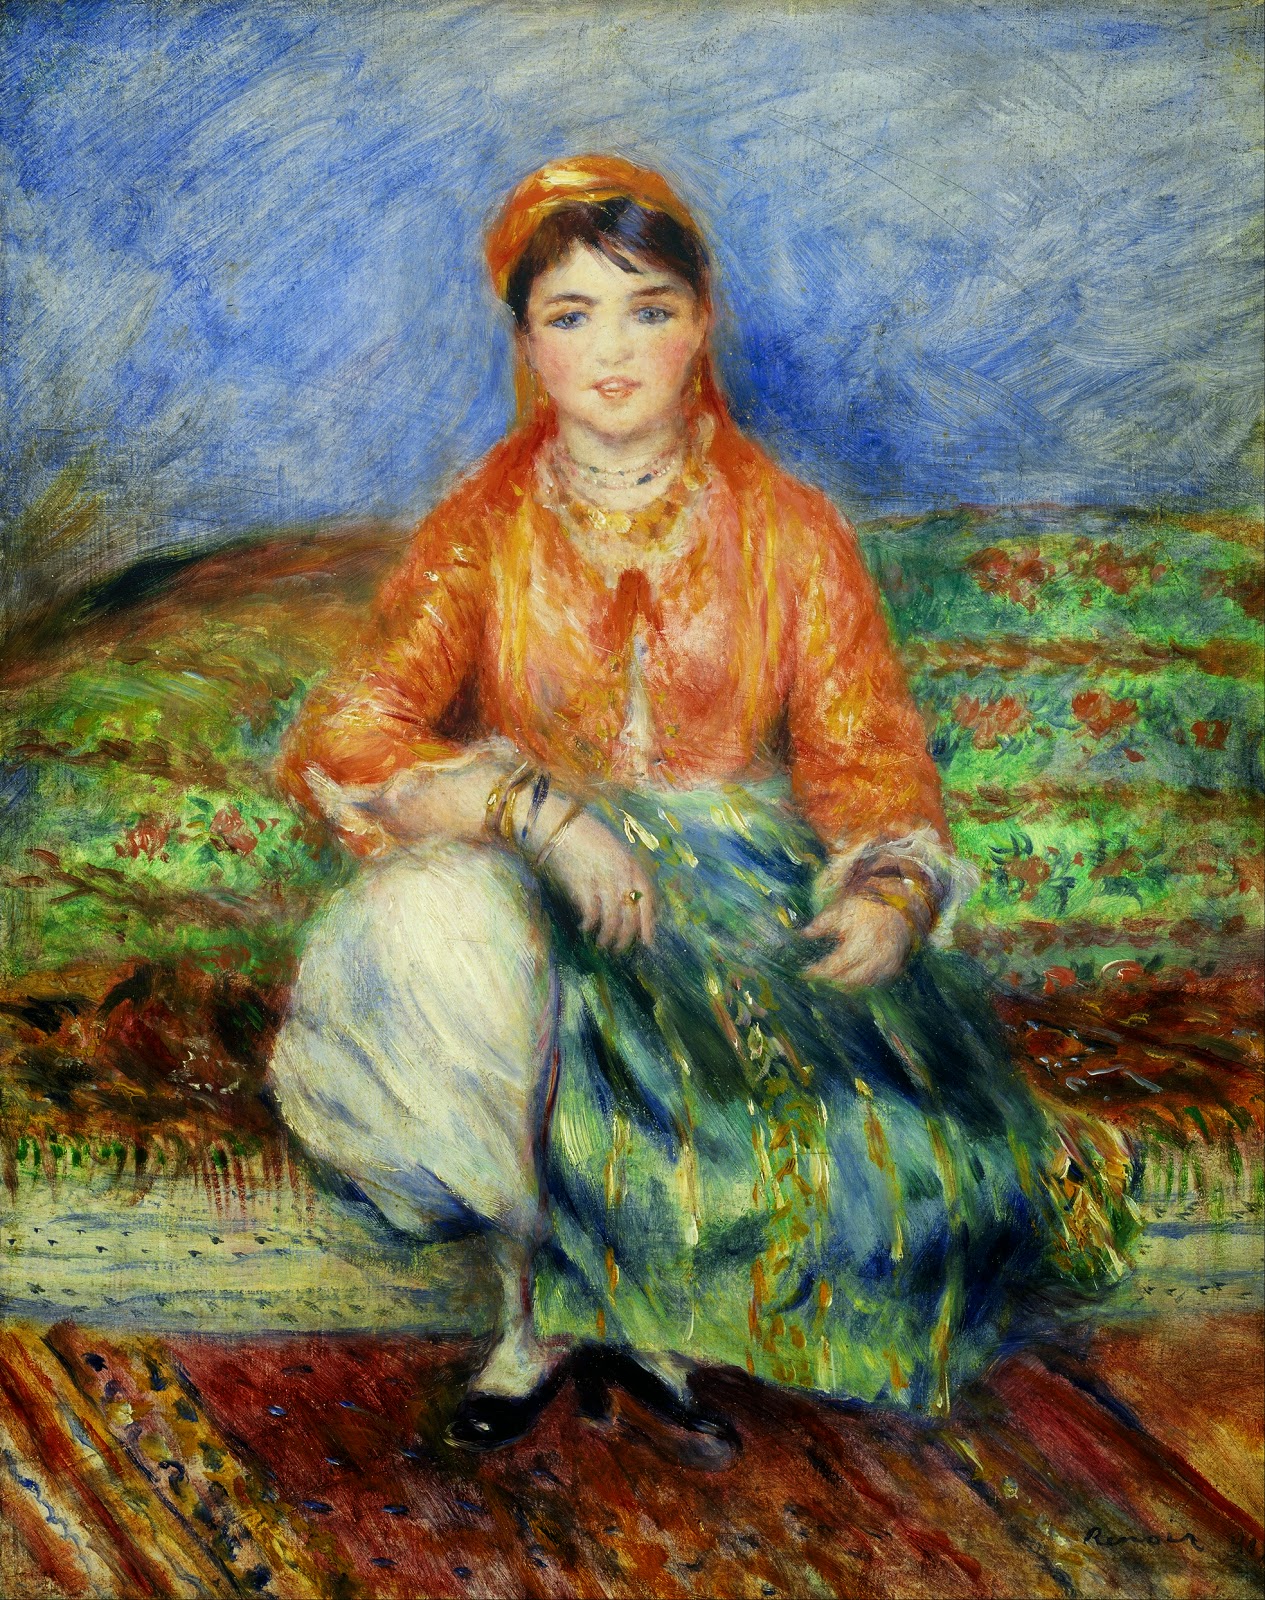 Pierre+Auguste+Renoir-1841-1-19 (258).jpg